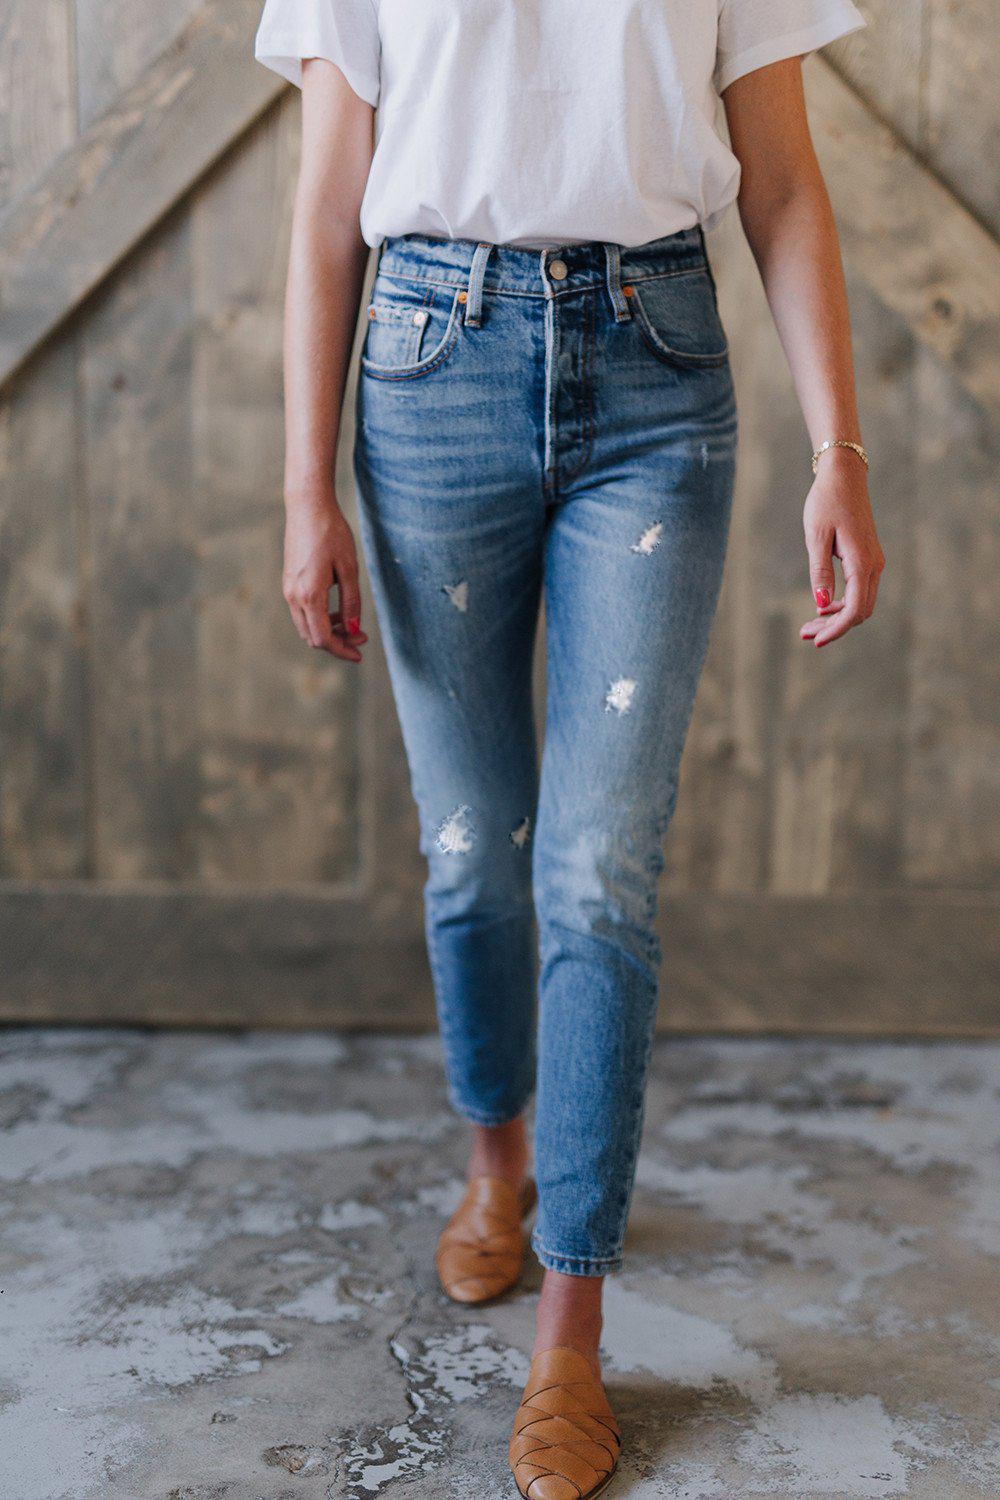 levi's 501 stretch skinny jeans